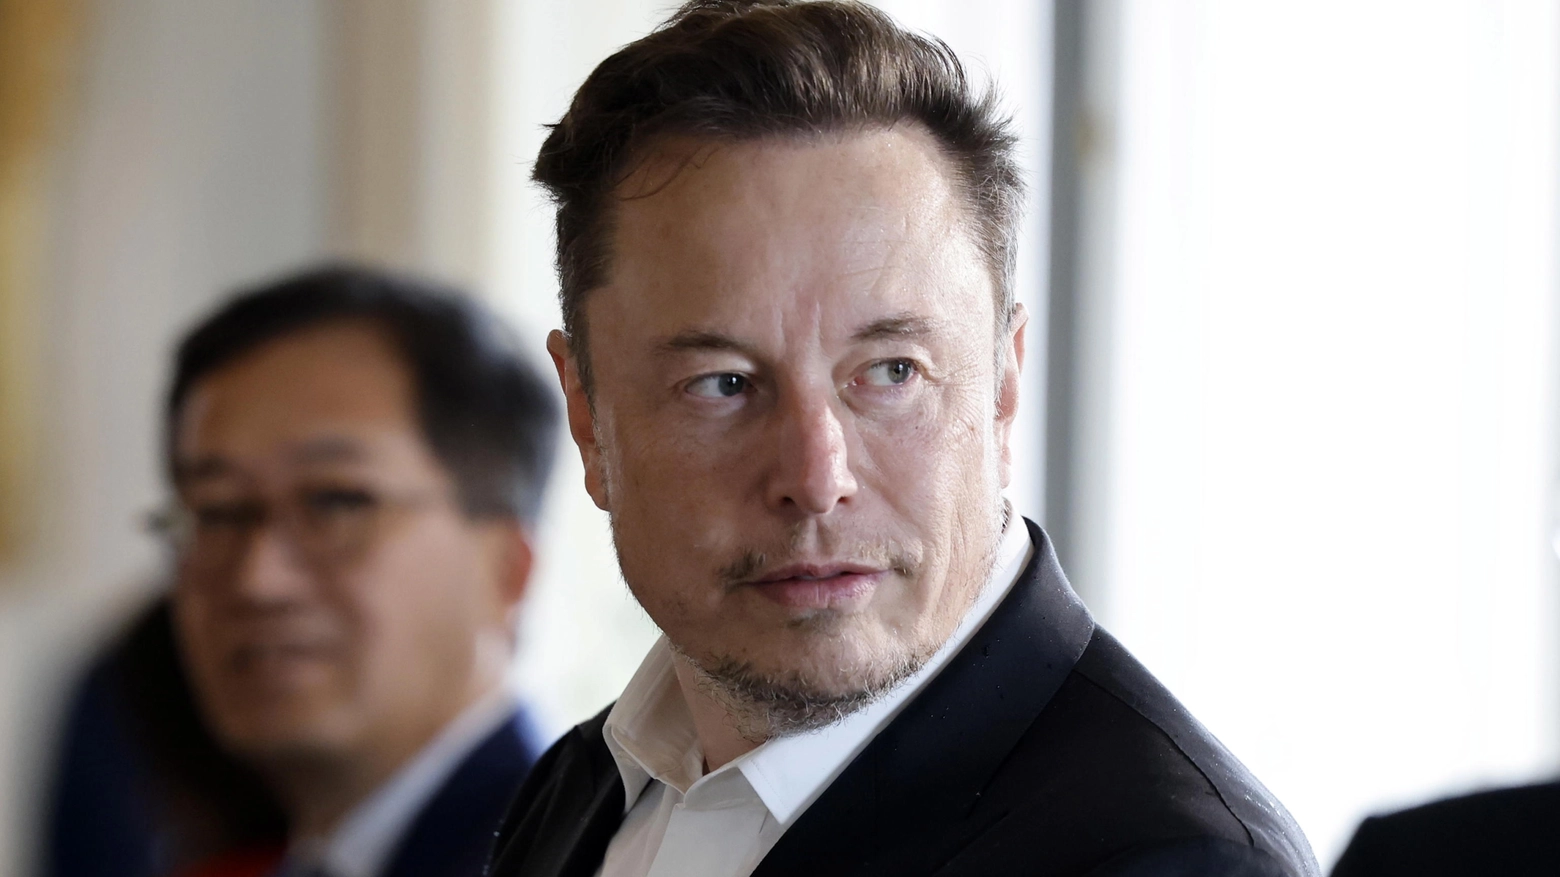 Elon Musk, biografia: chi è, carriera, patrimonio del fondatore di Tesla